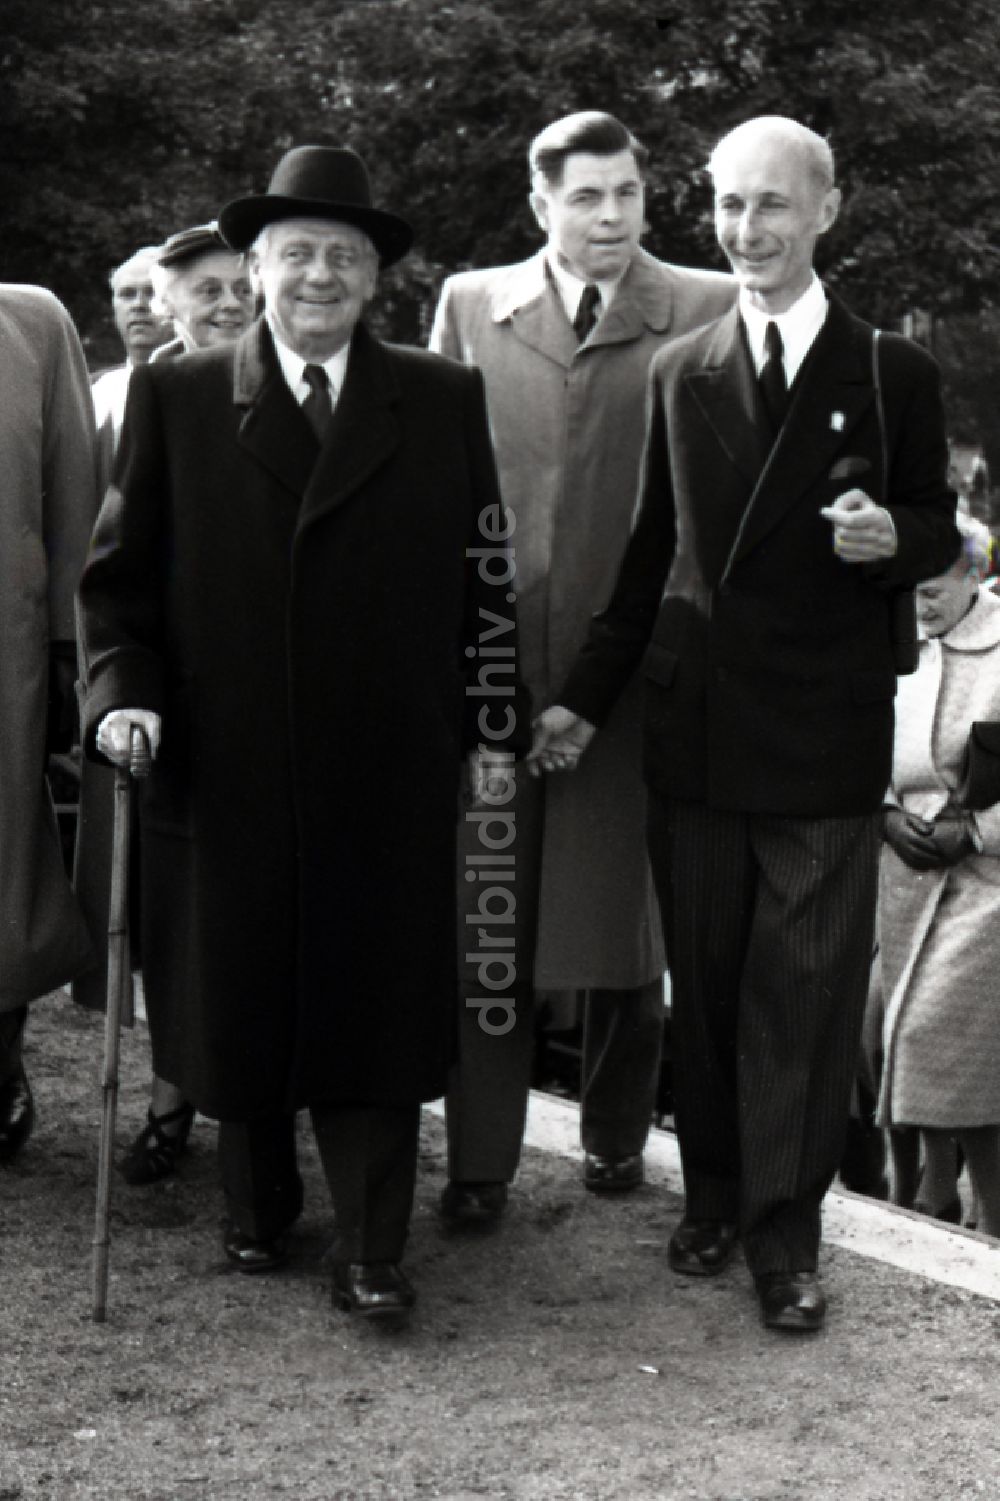 Hoppegarten: Präsident Wilhelm Pieck auf der Galopprennbahn in Hoppegarten in Brandenburg in der DDR